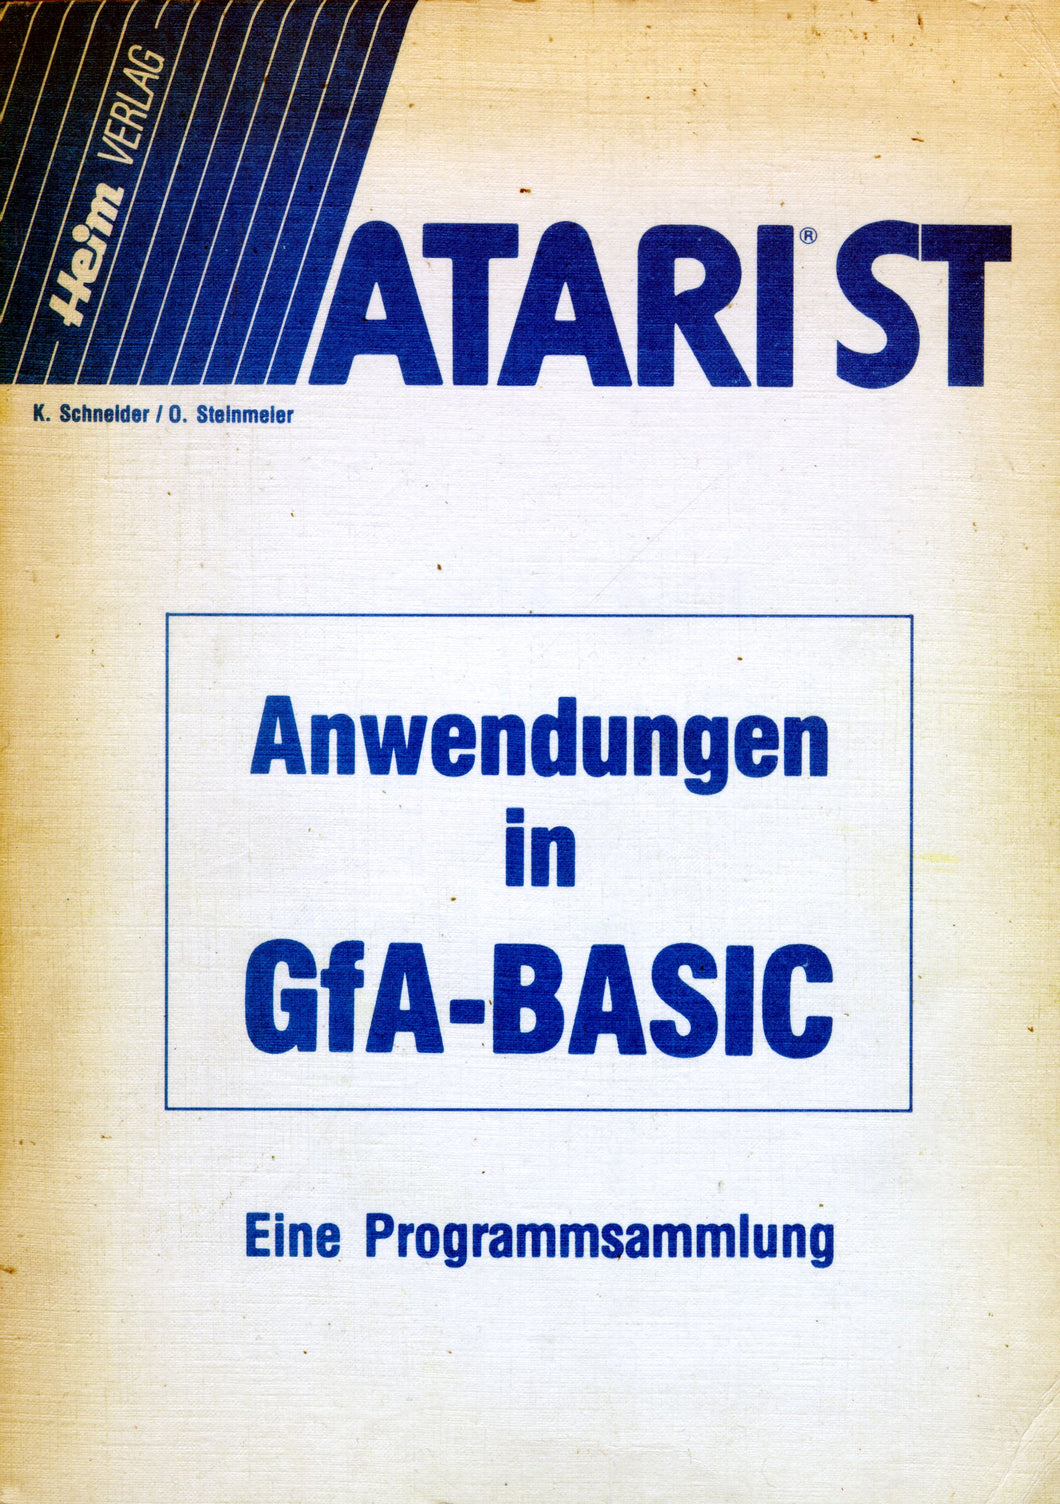 Atari ST Anwendungen in GfA-Basic VorderseiteAtari ST Anwendungen in GfA-Basic Vorderseite